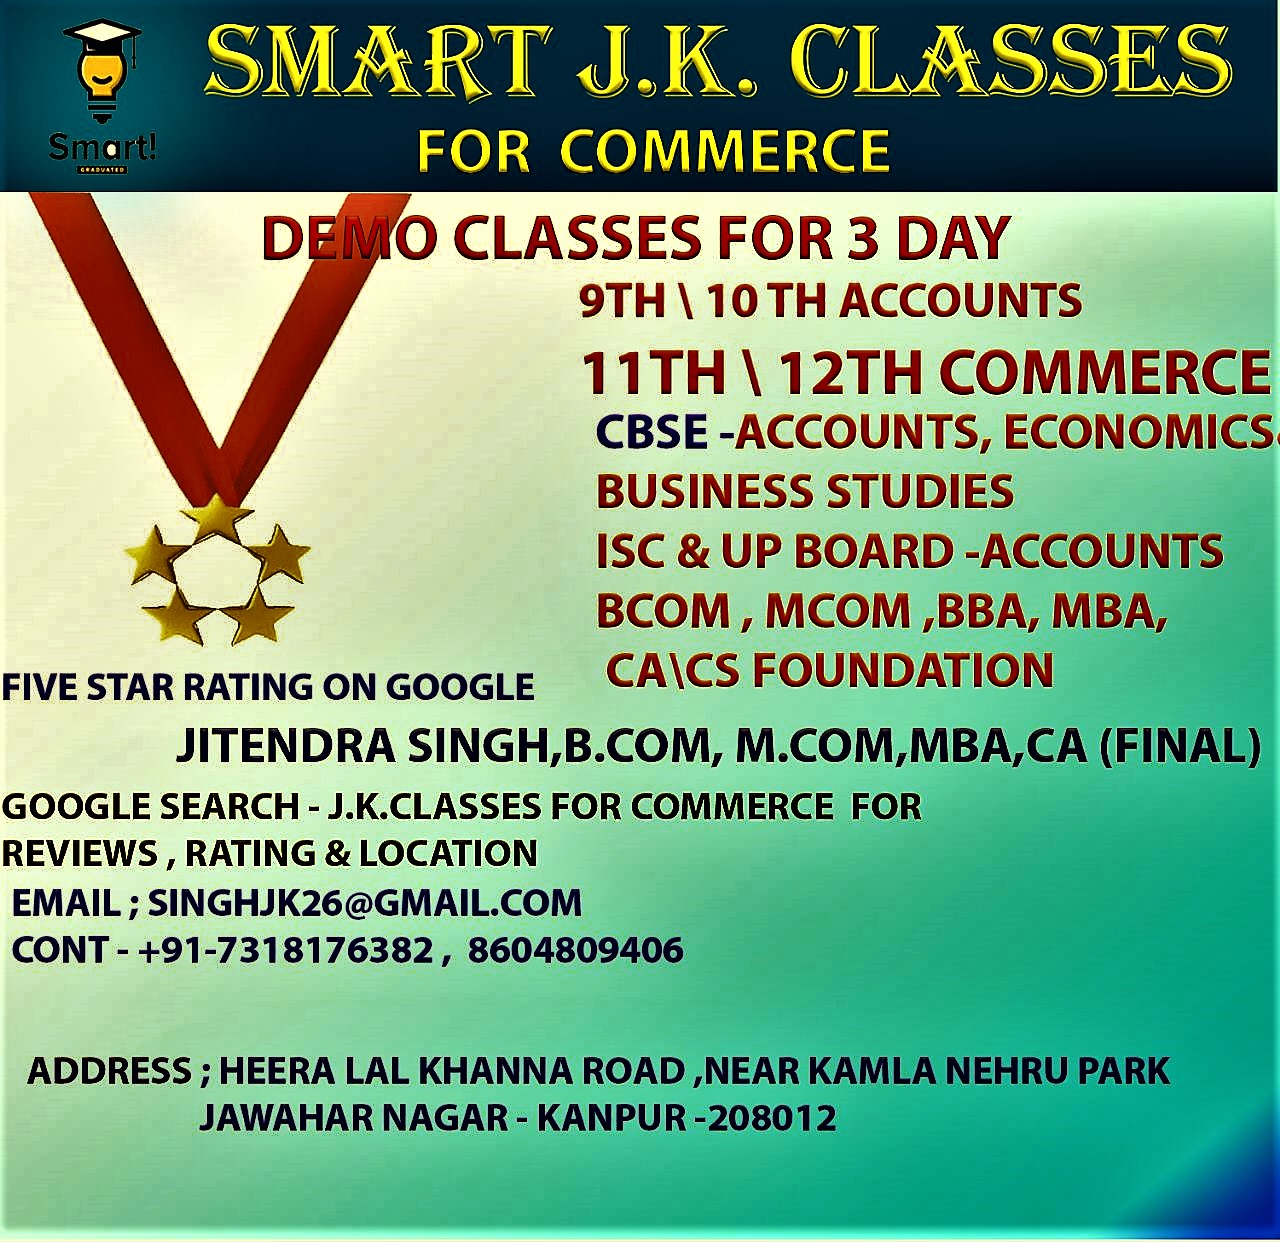 24094SMART J.K.CLASSES FOR COMMERCE
Accounts, Eco. BST
11th & 12th, B.Com, M.Com, BBA